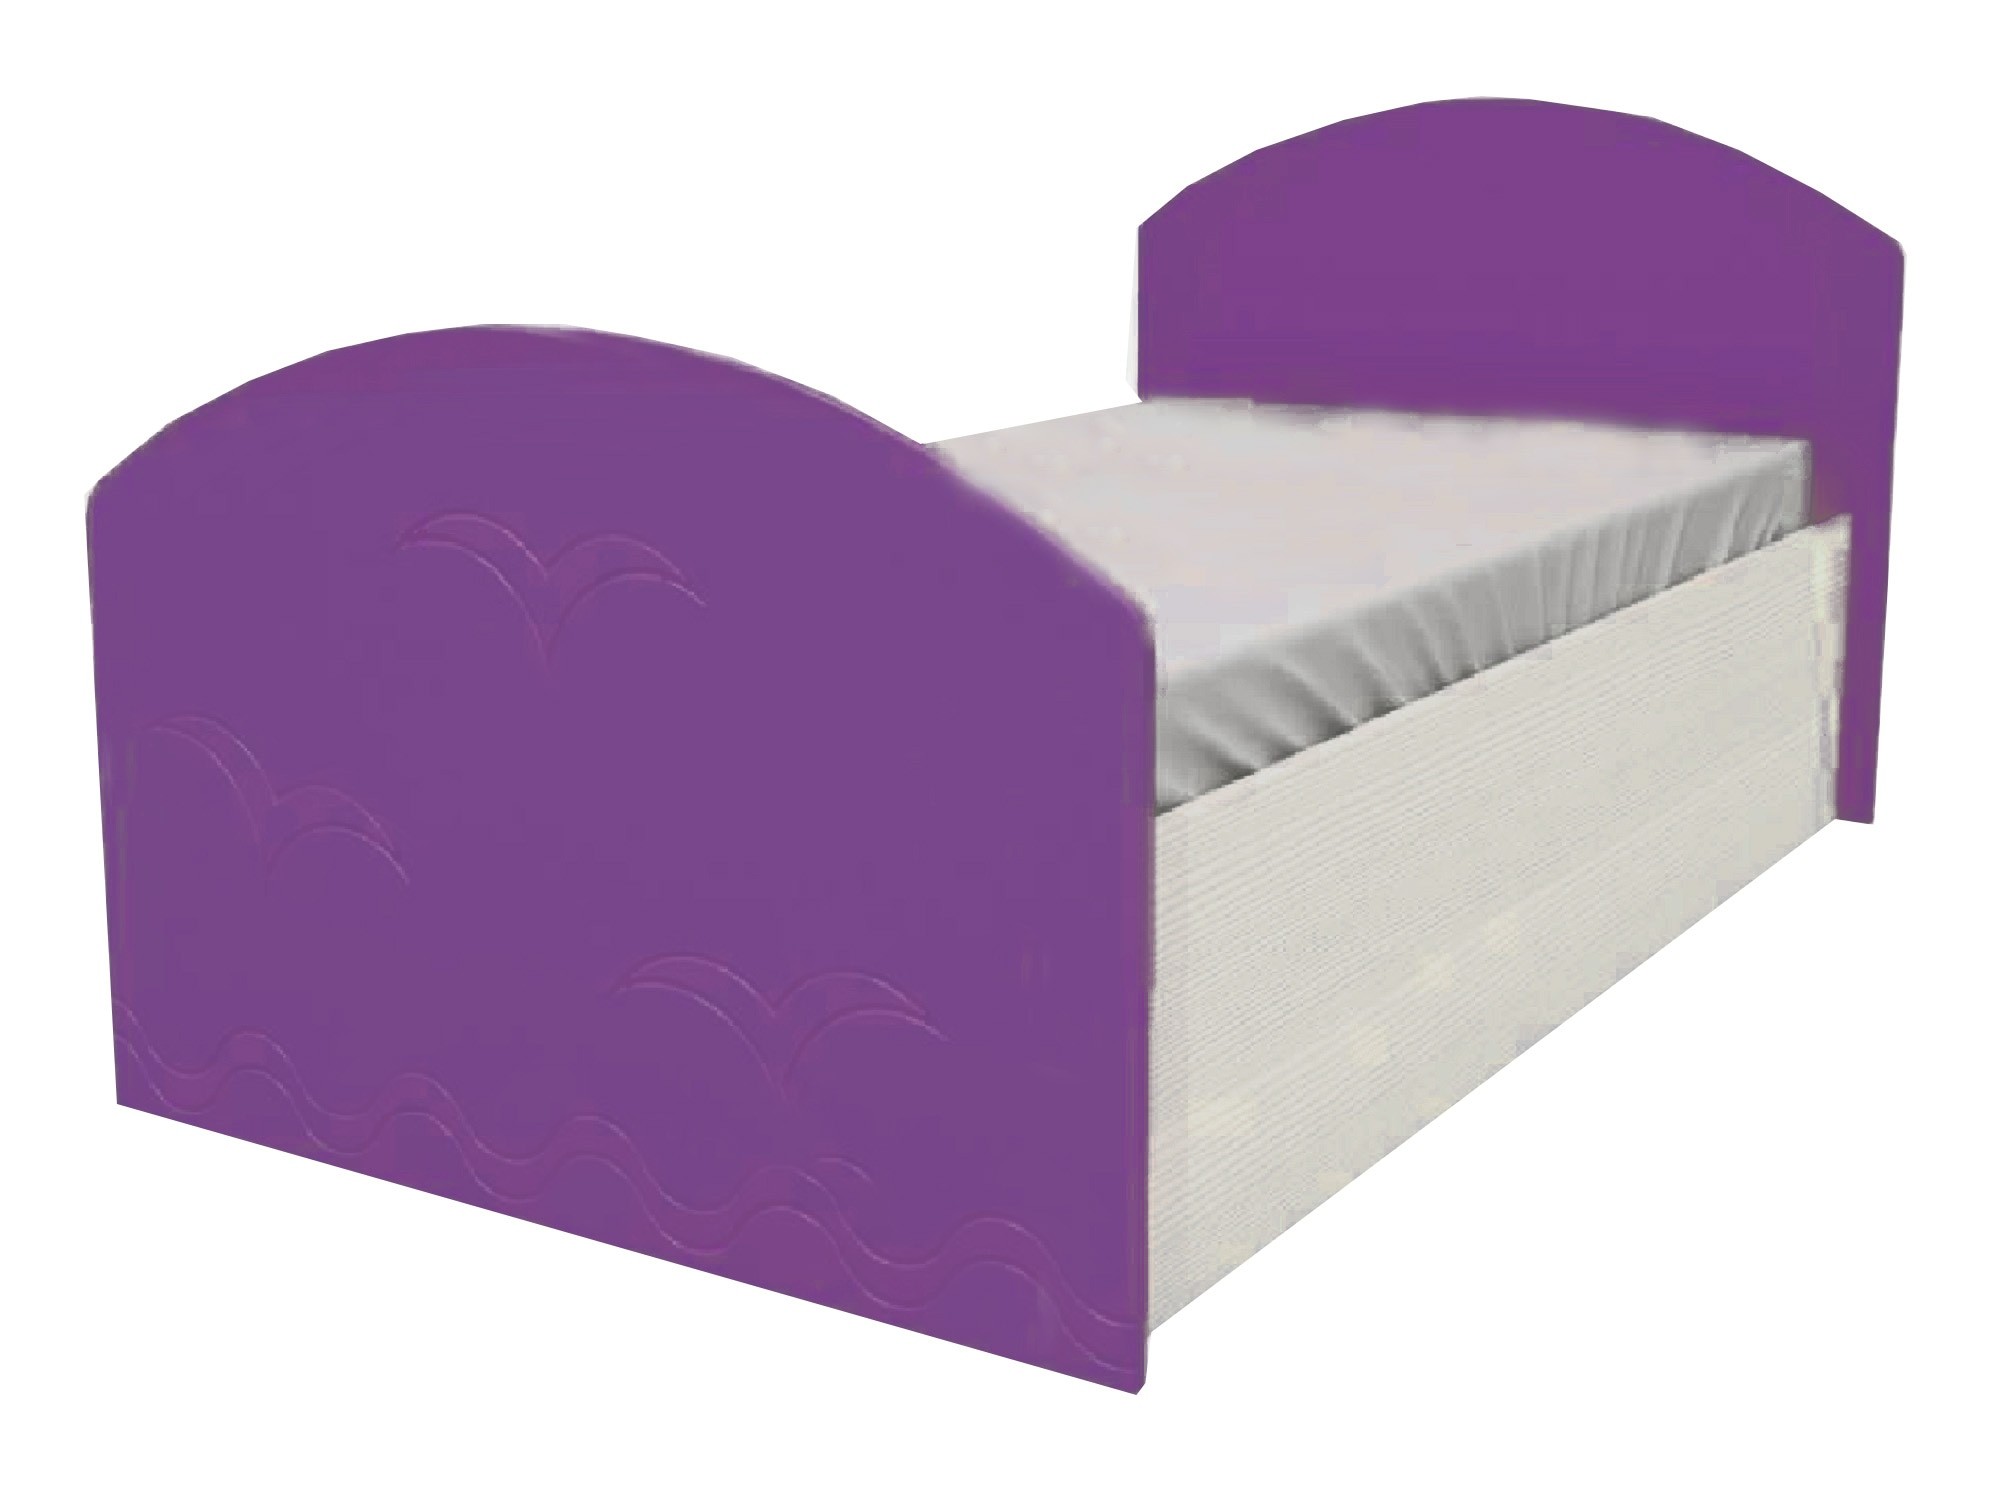 Юниор-2 Детская кровать 80, металлик (Фиолетовый металлик, Дуб белёный) Фиолетовый металлик, МДФ, ЛДСП юниор 2 детская кровать 80 металлик фиолетовый металлик дуб белёный фиолетовый металлик мдф лдсп